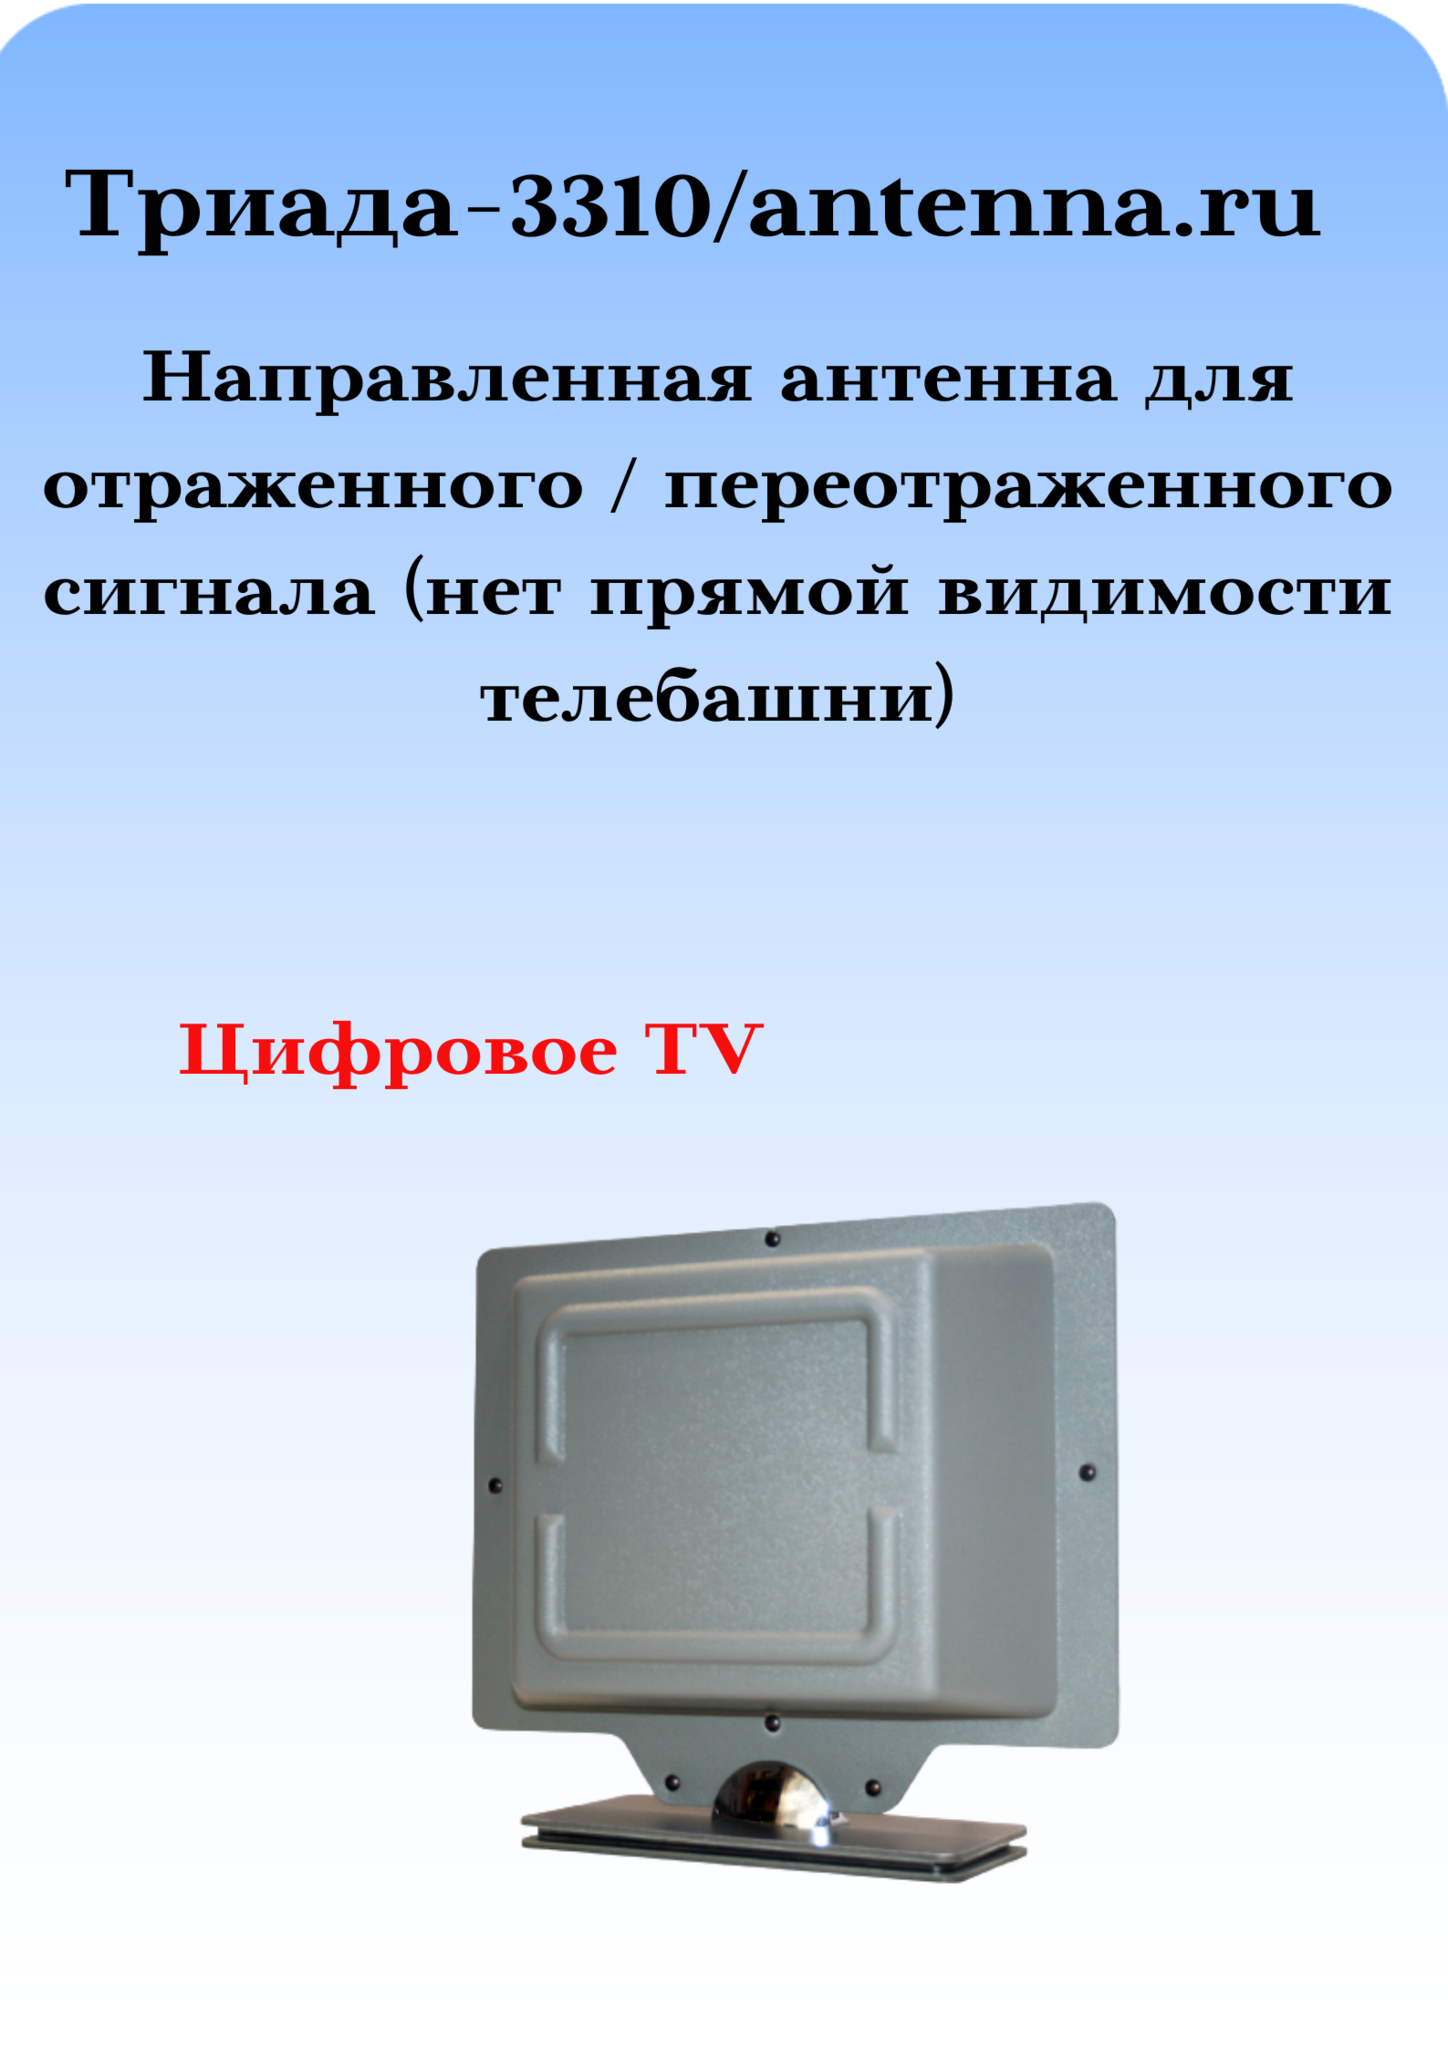 Лучшая антенна для DVB-T/T2 своими руками – Русский Топ